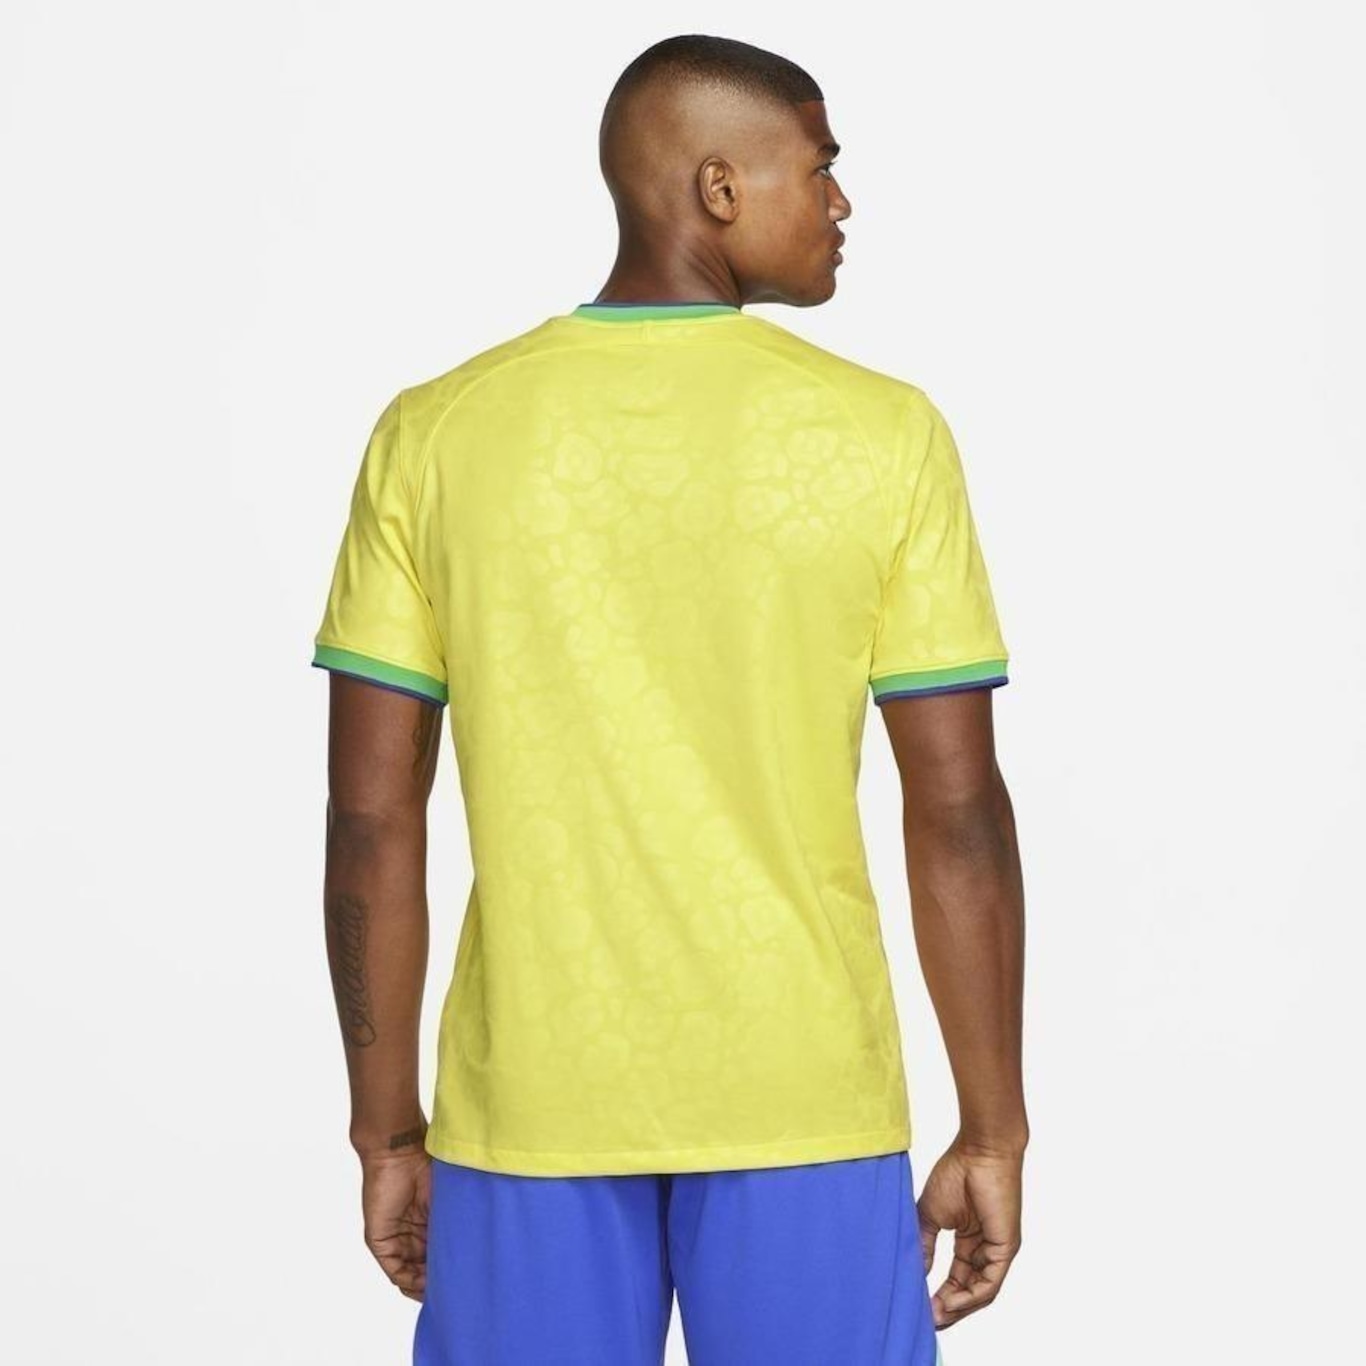 Camisa Nike Brasil Edição Copa do Mundo Qatar 22/23 Jogador - Azul - Loja  ProFut